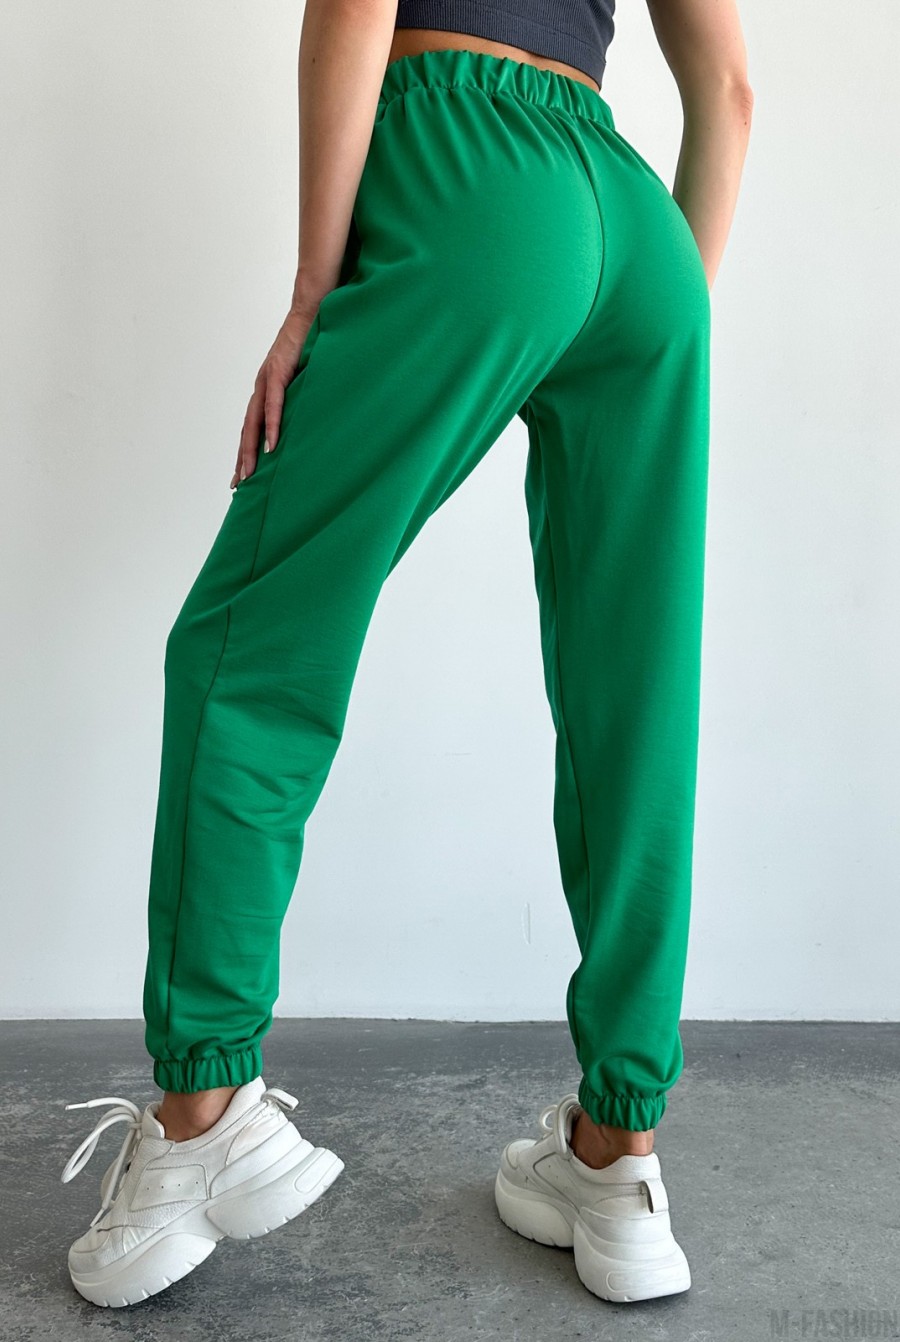 Зеленые трикотажные спортивные штаны модели джоггер - Фото 3